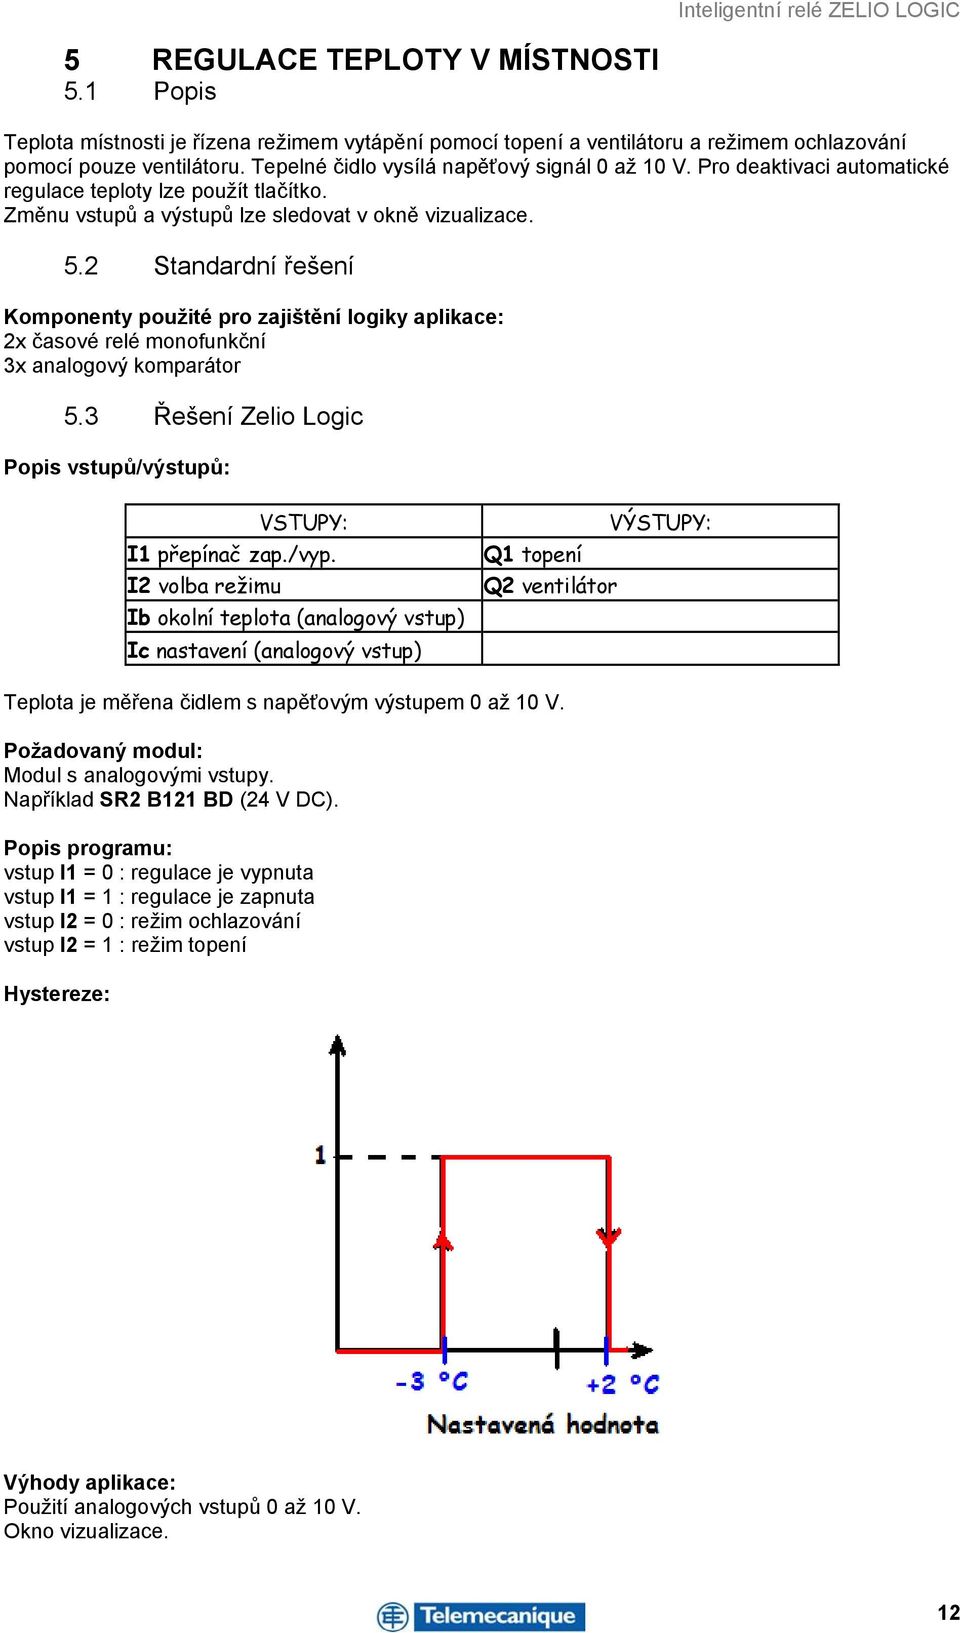 2 Standardní řešení Komponenty použité pro zajištění logiky aplikace: 2x časové relé monofunkční 3x analogový komparátor 5.3 Řešení Zelio Logic Popis vstupů/výstupů: VSTUPY: I1 přepínač zap./vyp.